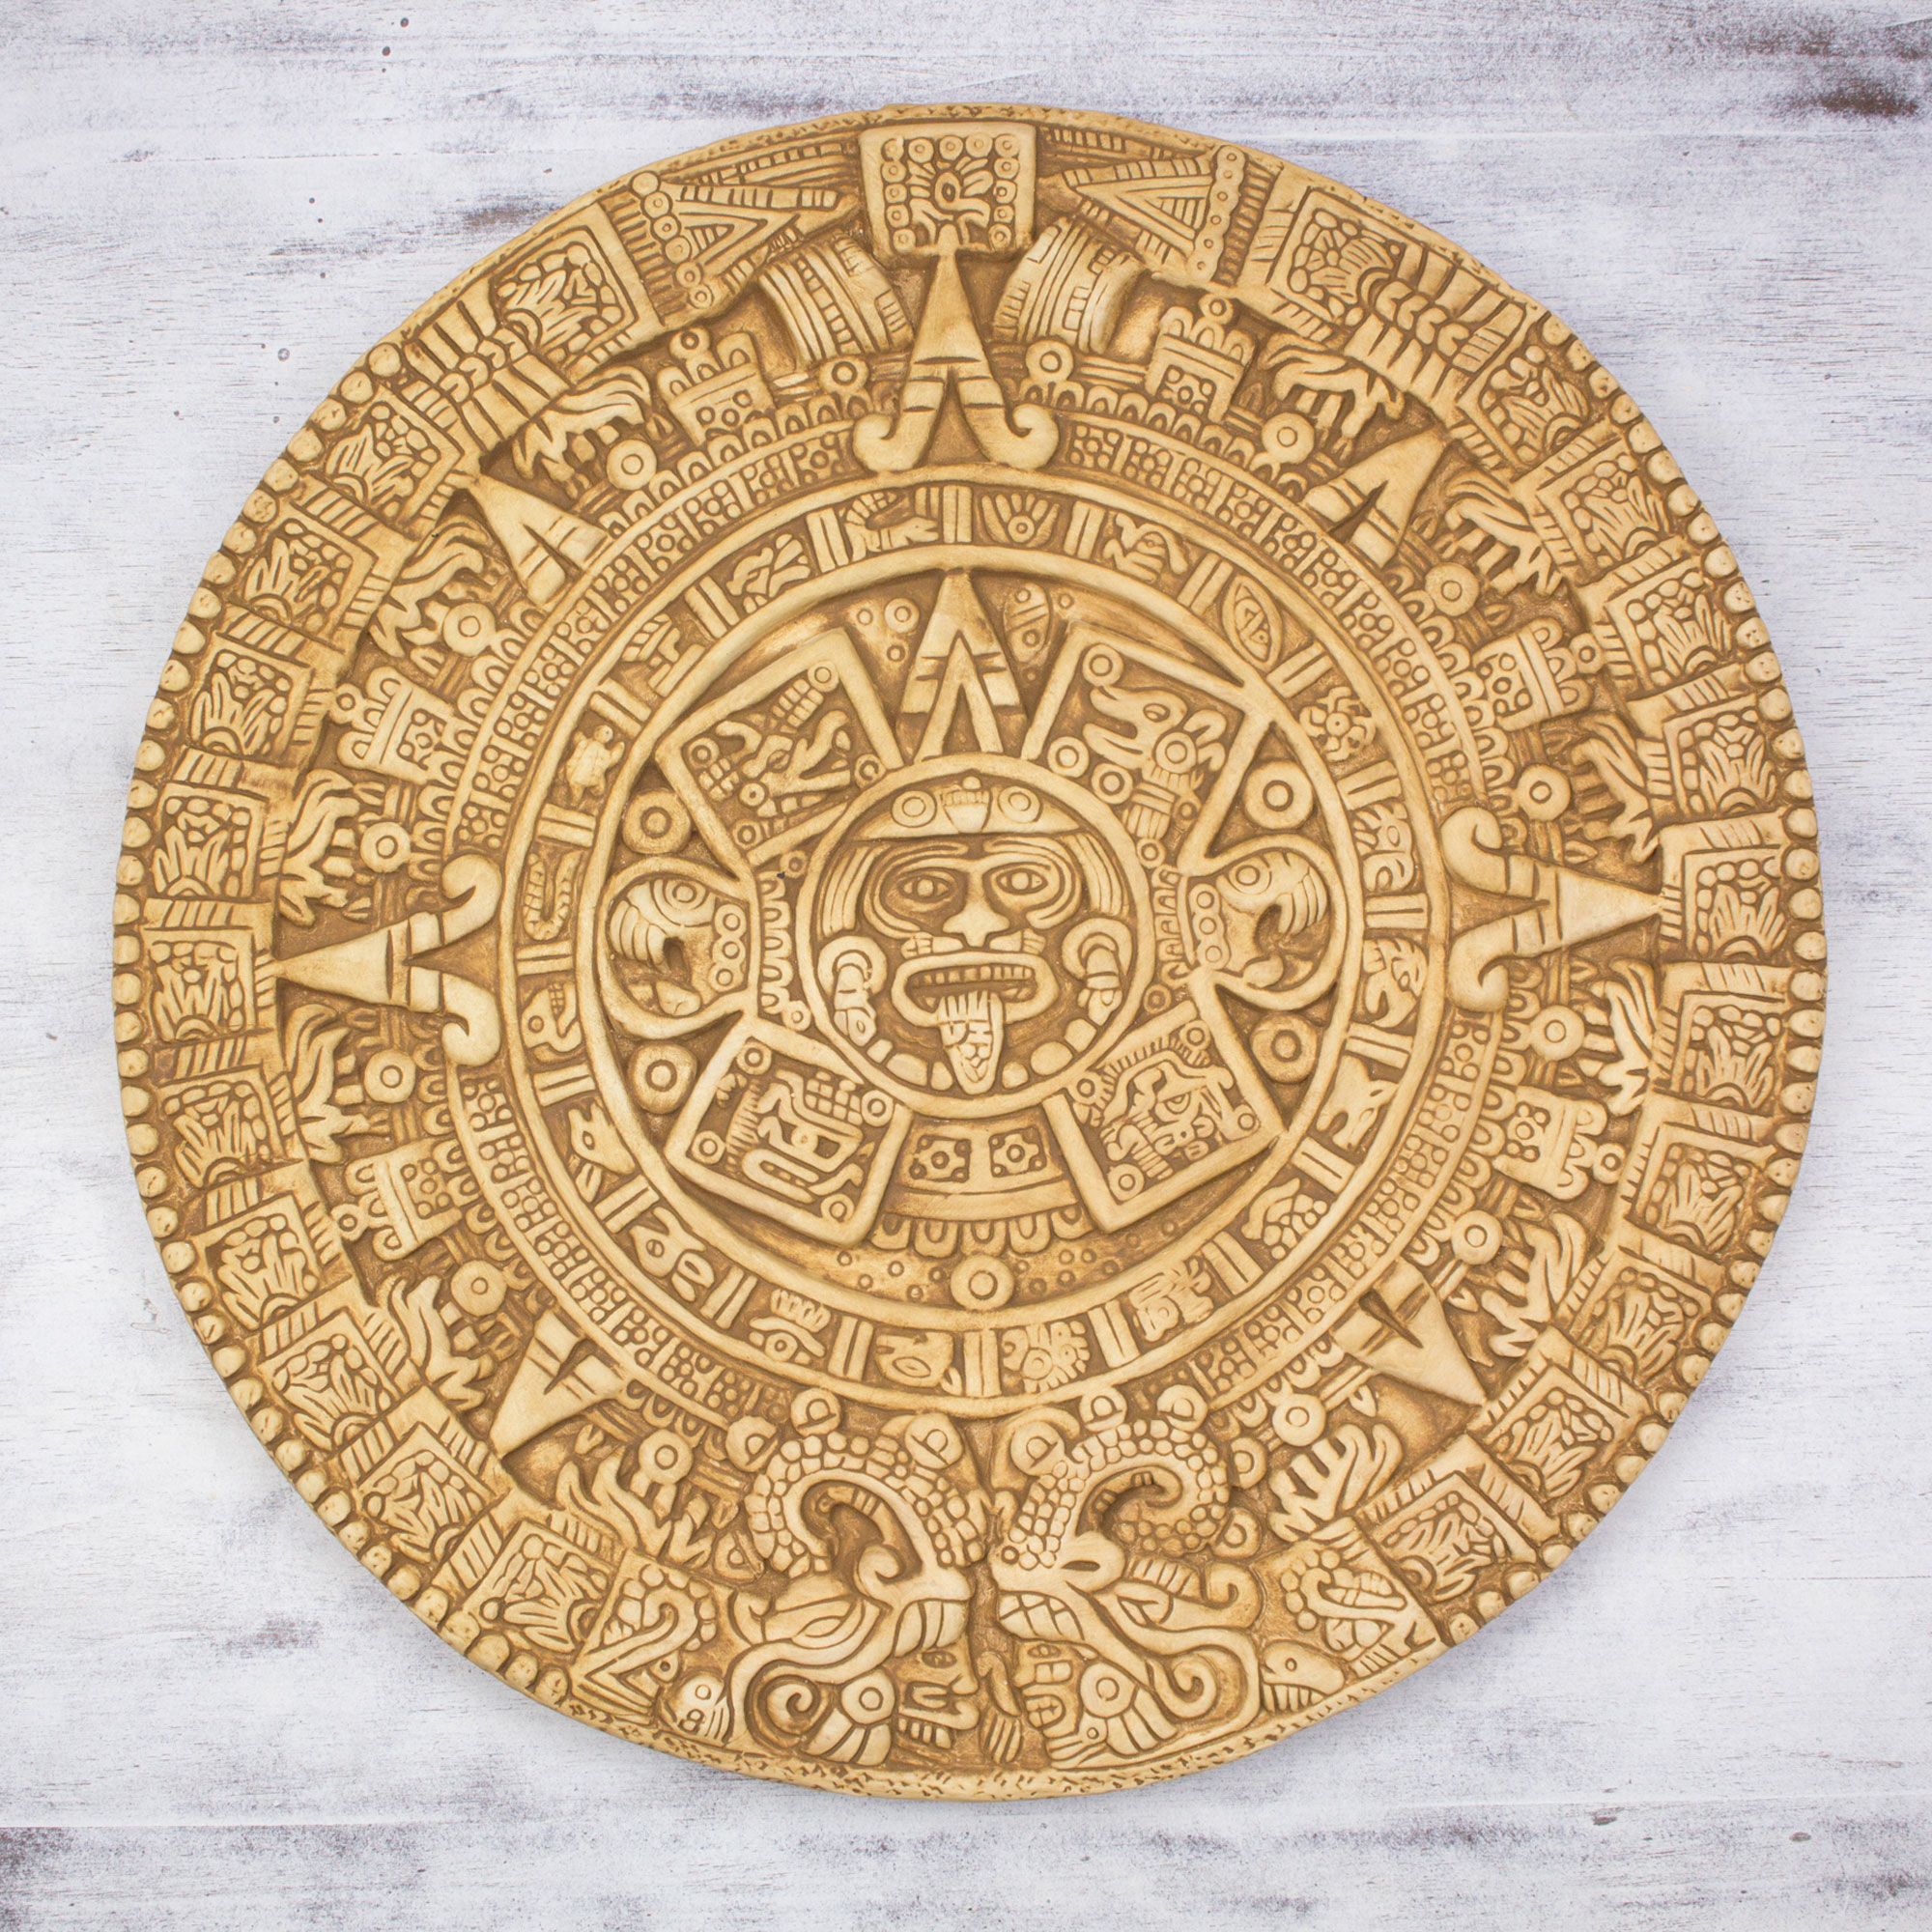 Календарь ма й я слушать. Солнечный камень ацтеков. Ацтекский камень солнца. Ацтекский календарь камень солнца. Индейцы Майя календарь Цолькин.